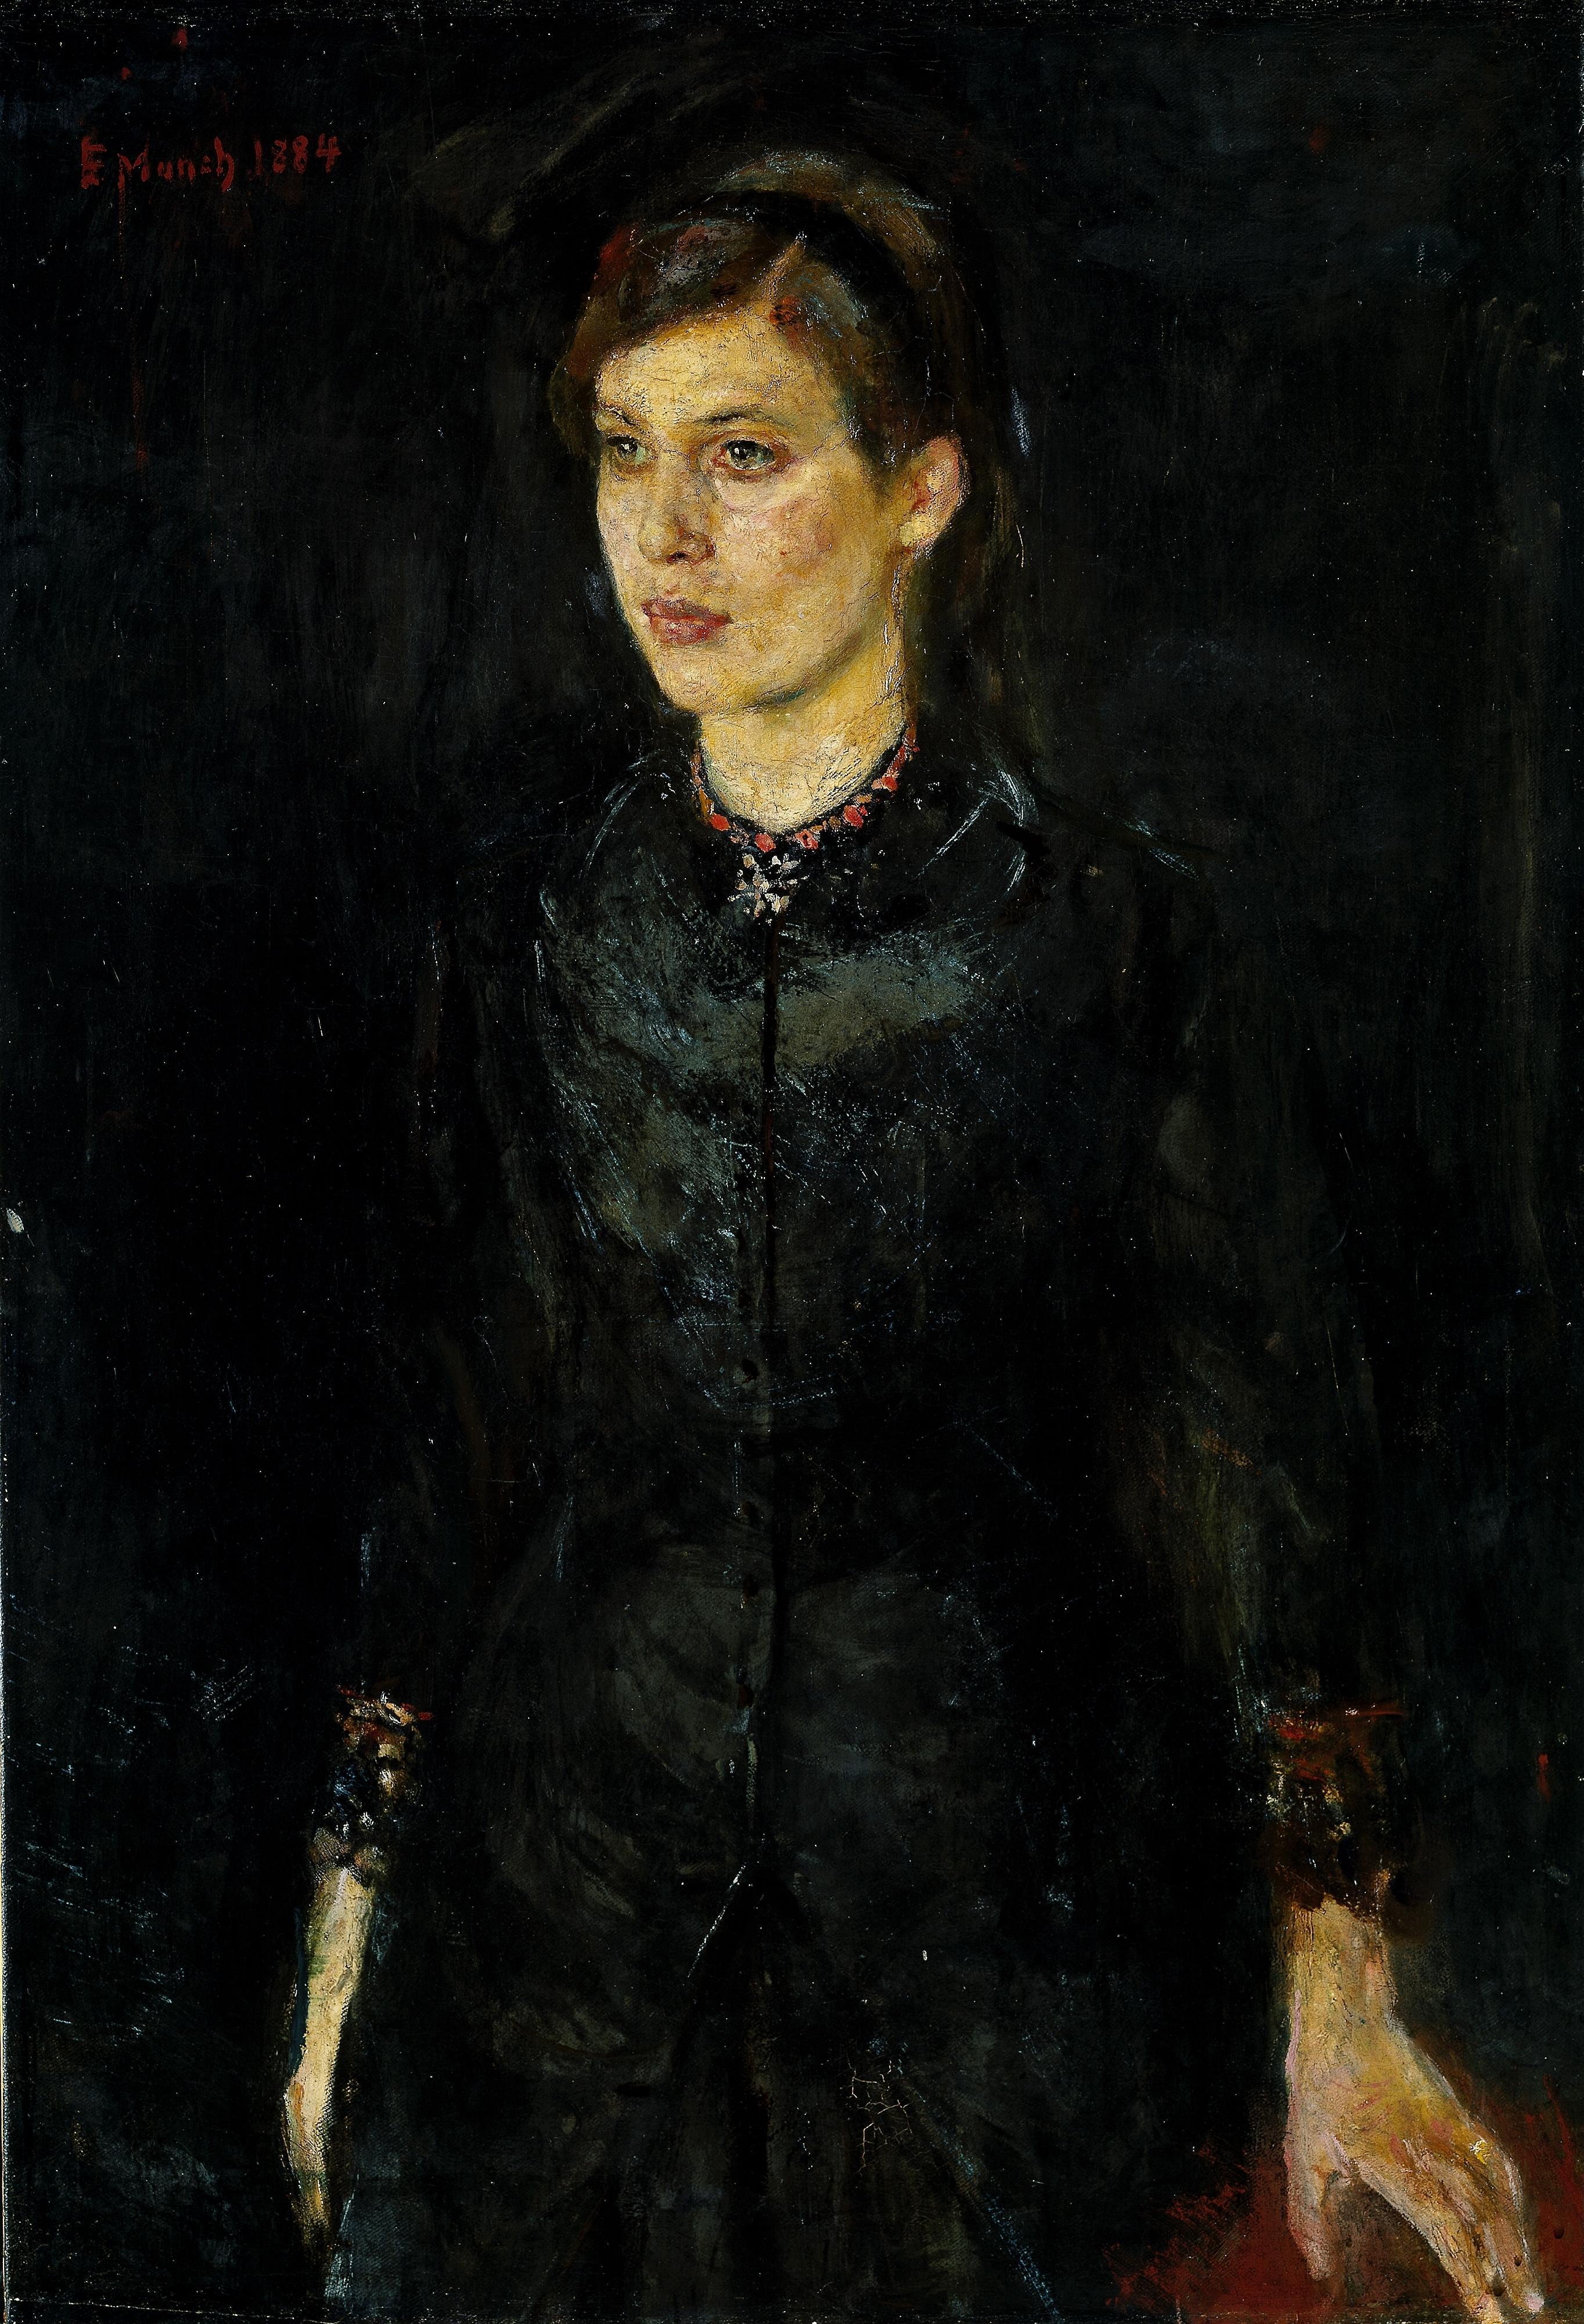 Inger feketében by Edvard Munch - 1884 - 97 x 67 cm 